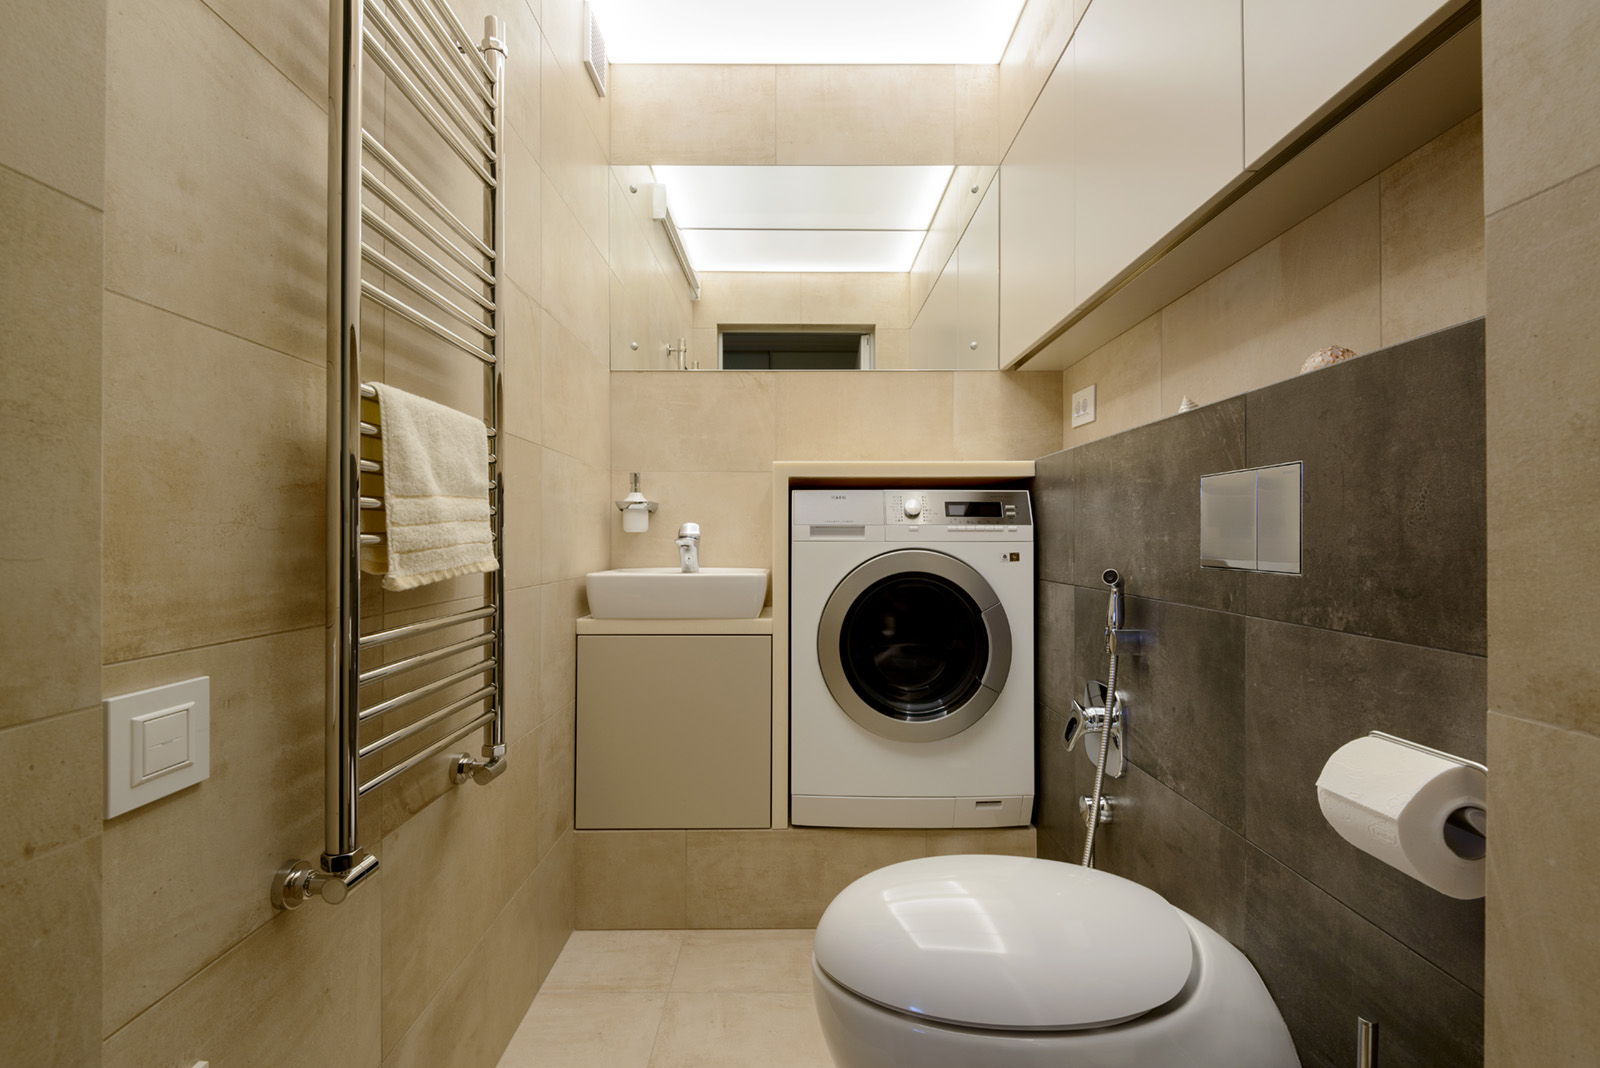 Máy giặt trong nhà vệ sinh (27 ảnh): thiết kế phòng với một máy ...